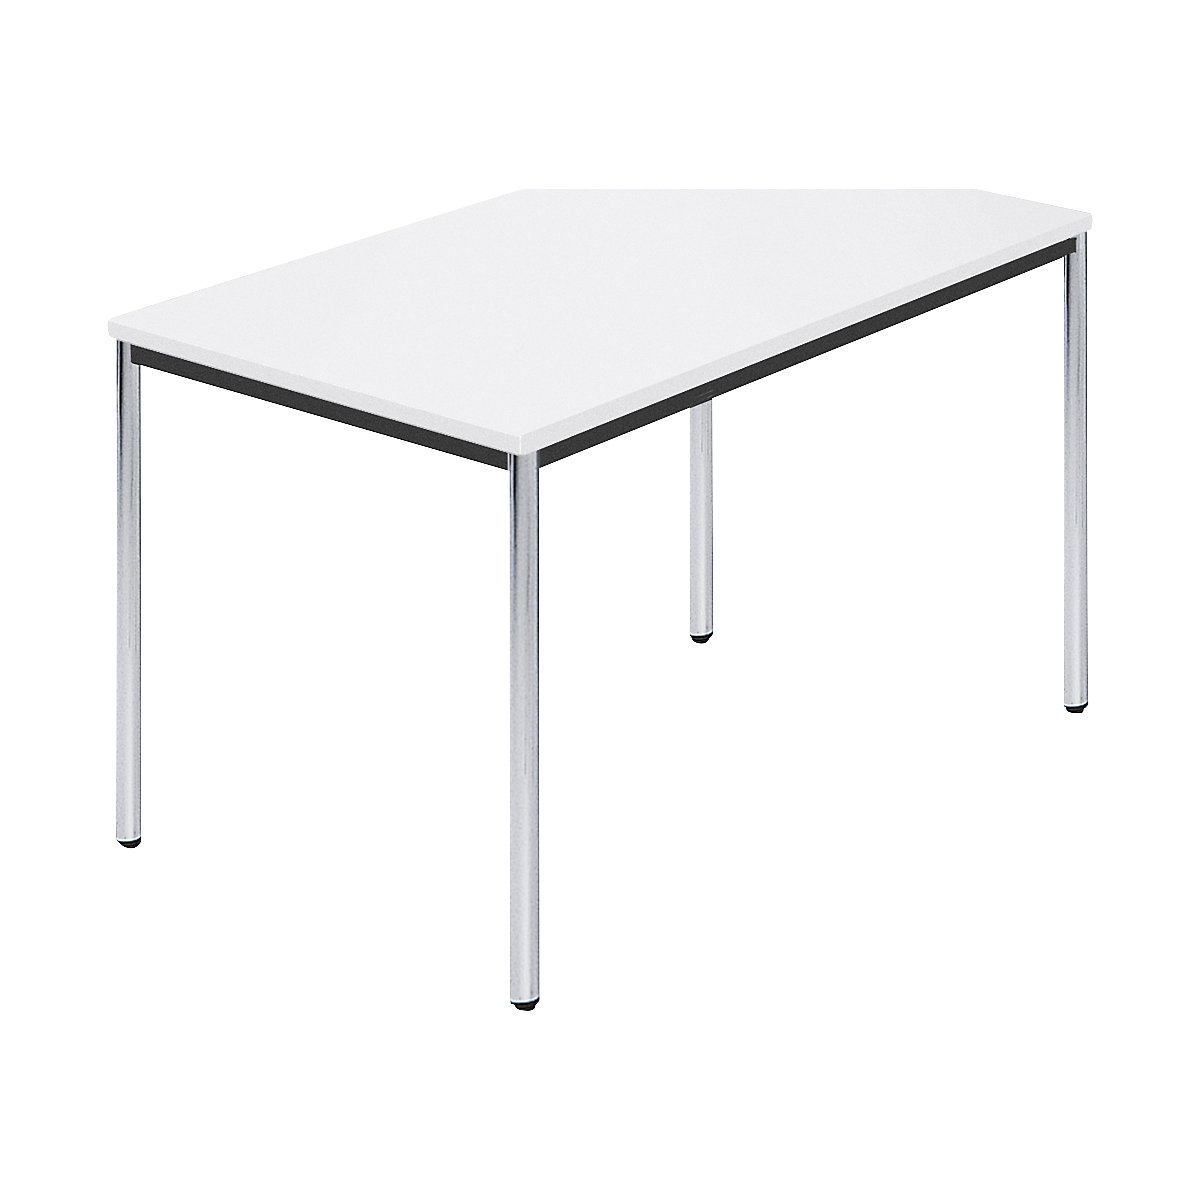 Rechthoekige tafel, met ronde, verchroomde tafelpoten, b x d = 1200 x 800 mm, wit-5